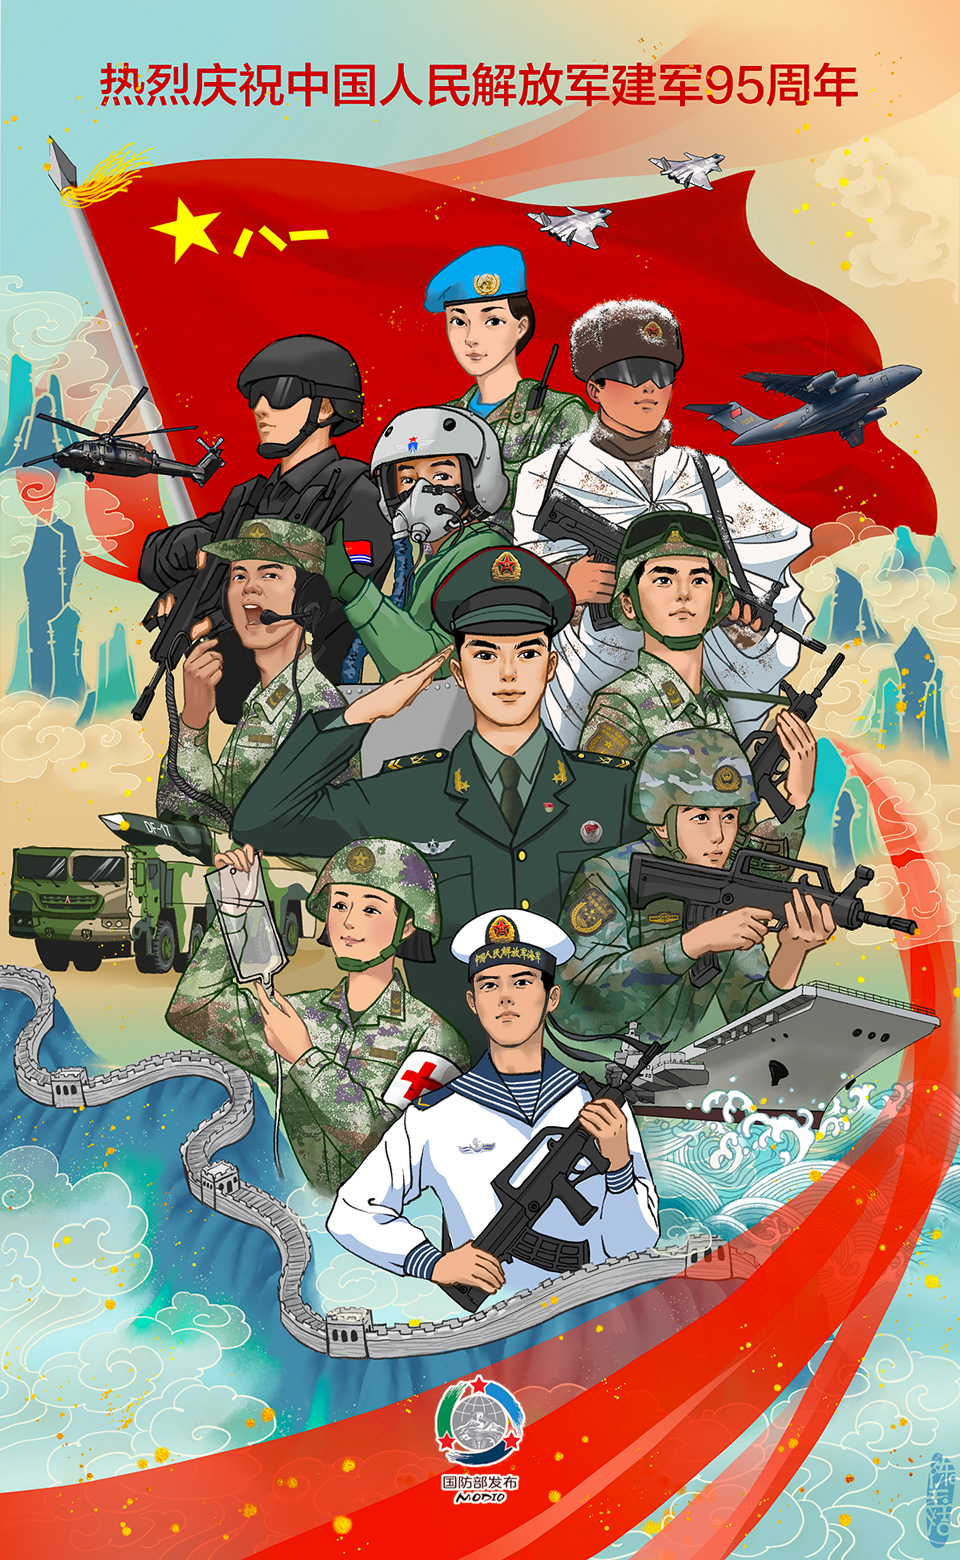 热烈庆祝中国人民解放军建军95周年- 中华人民共和国国防部 image